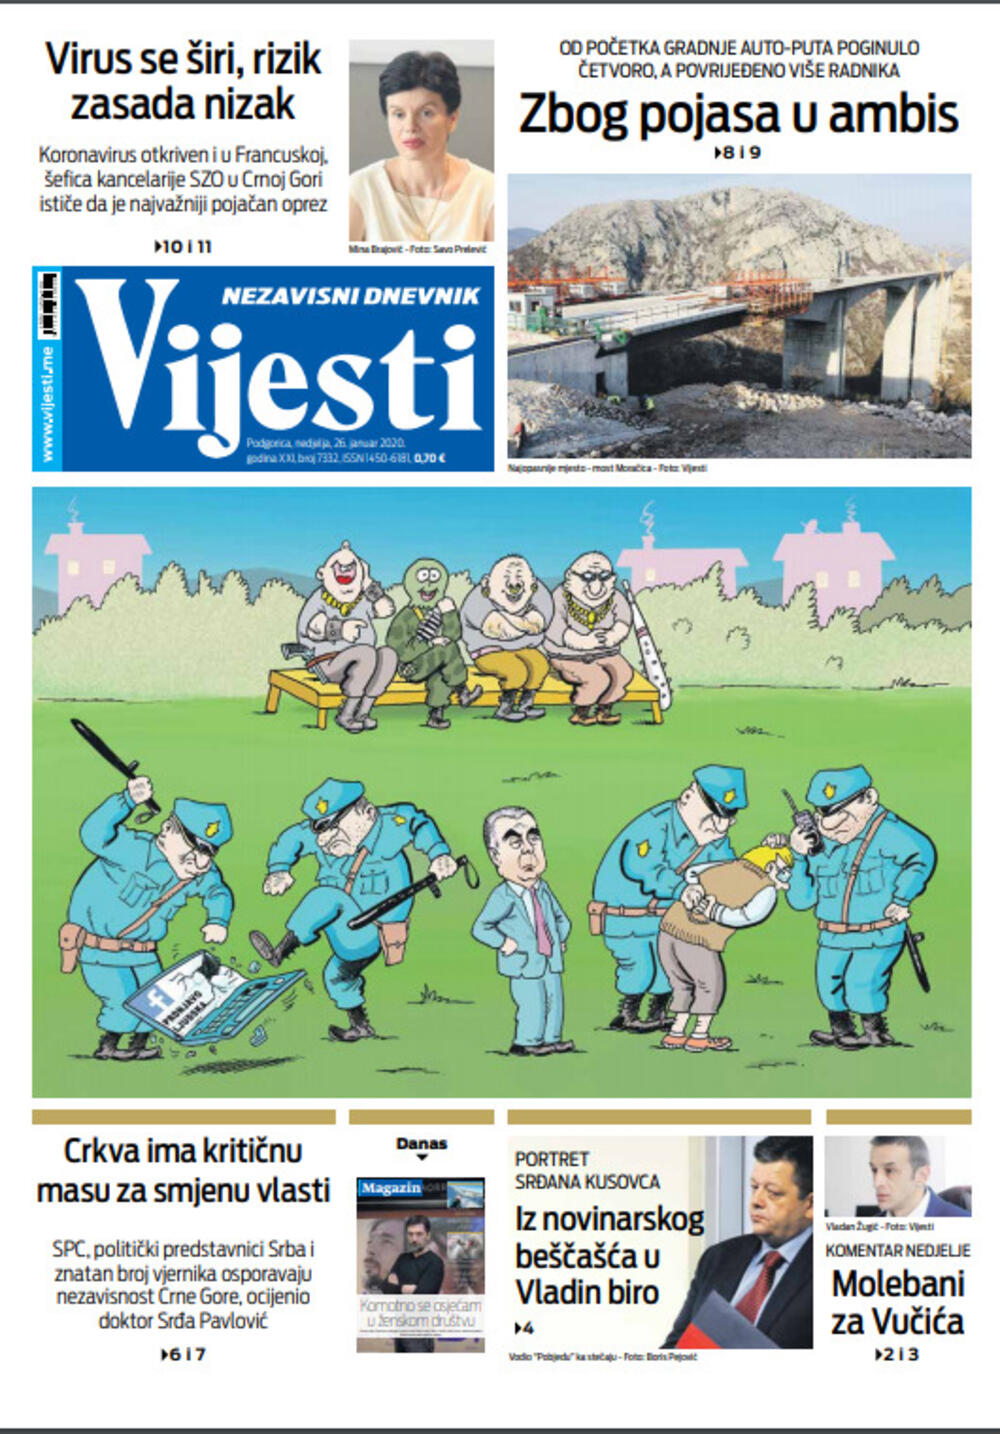 Naslovna strana "Vijesti" za 26. januar 2020. godine, Foto: "Vijesti"